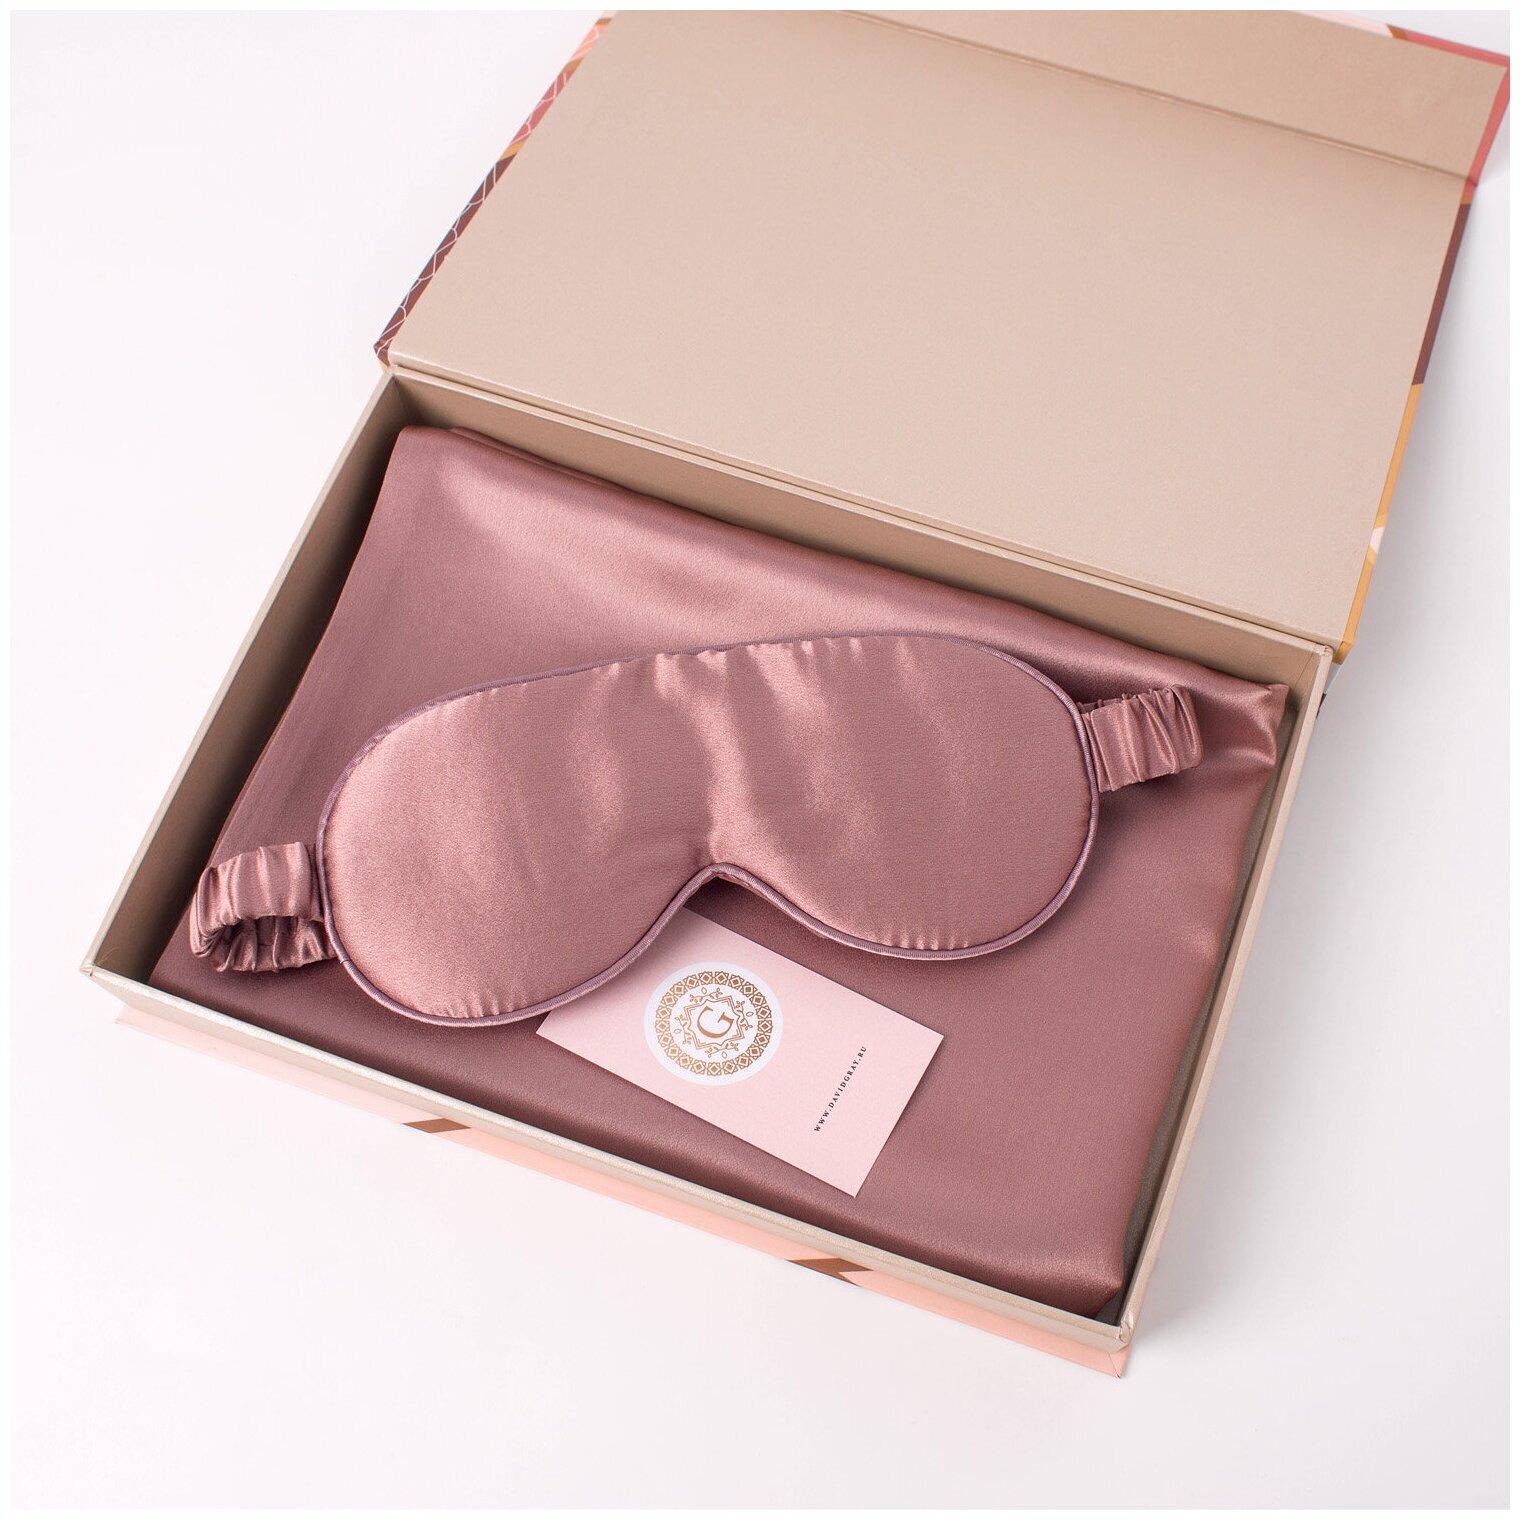 Комплект шелковая наволочка Прованс 50х70 с запахом и шелковая маска для сна Прованс в подарочной коробке